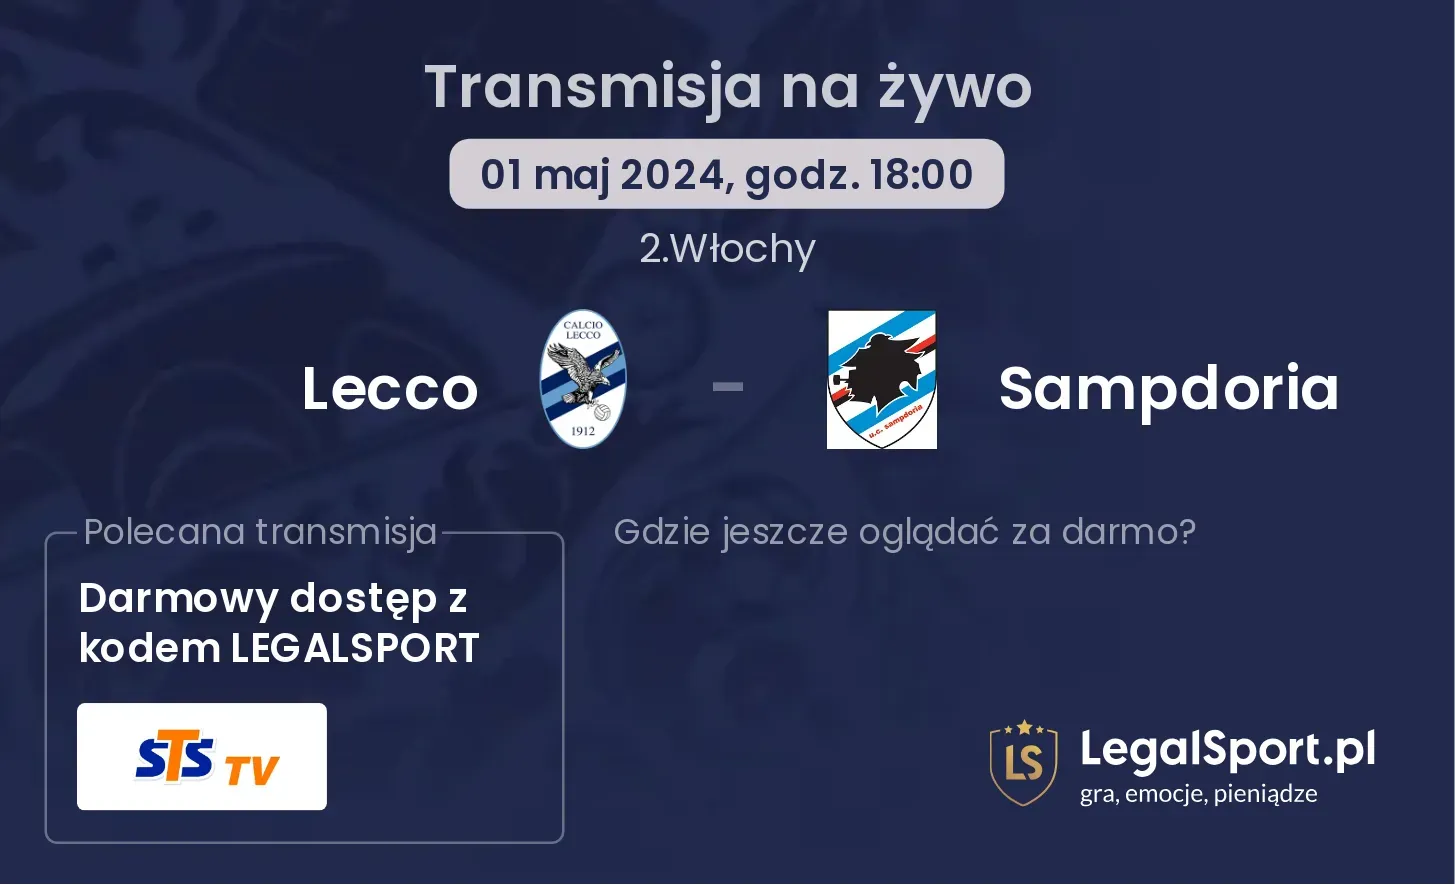 Lecco - Sampdoria transmisja na żywo